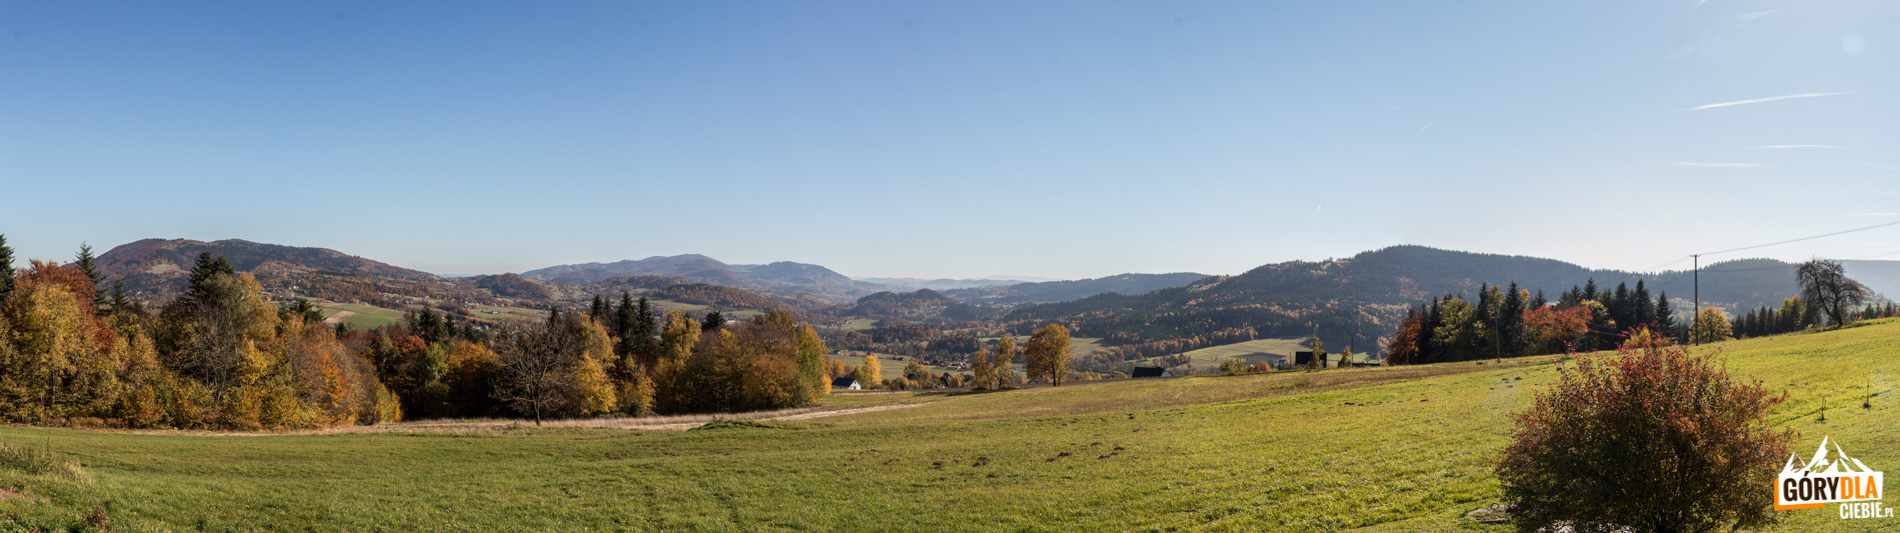 Panorama Beskidu Wyspowego spod pd.-wsch. zboczy Kostrza: od lewej Pasierbiecka Góra (764 m), Kamionna (801 m), Jaworz (918 m), Sałasz (909 m), Łysa Góra (781 m), Młyńska Góra (508 m), Zęzów (693 m), na horyzoncie Pasmo Jaworzyny Krynickiej w Beskidzie Sądeckim